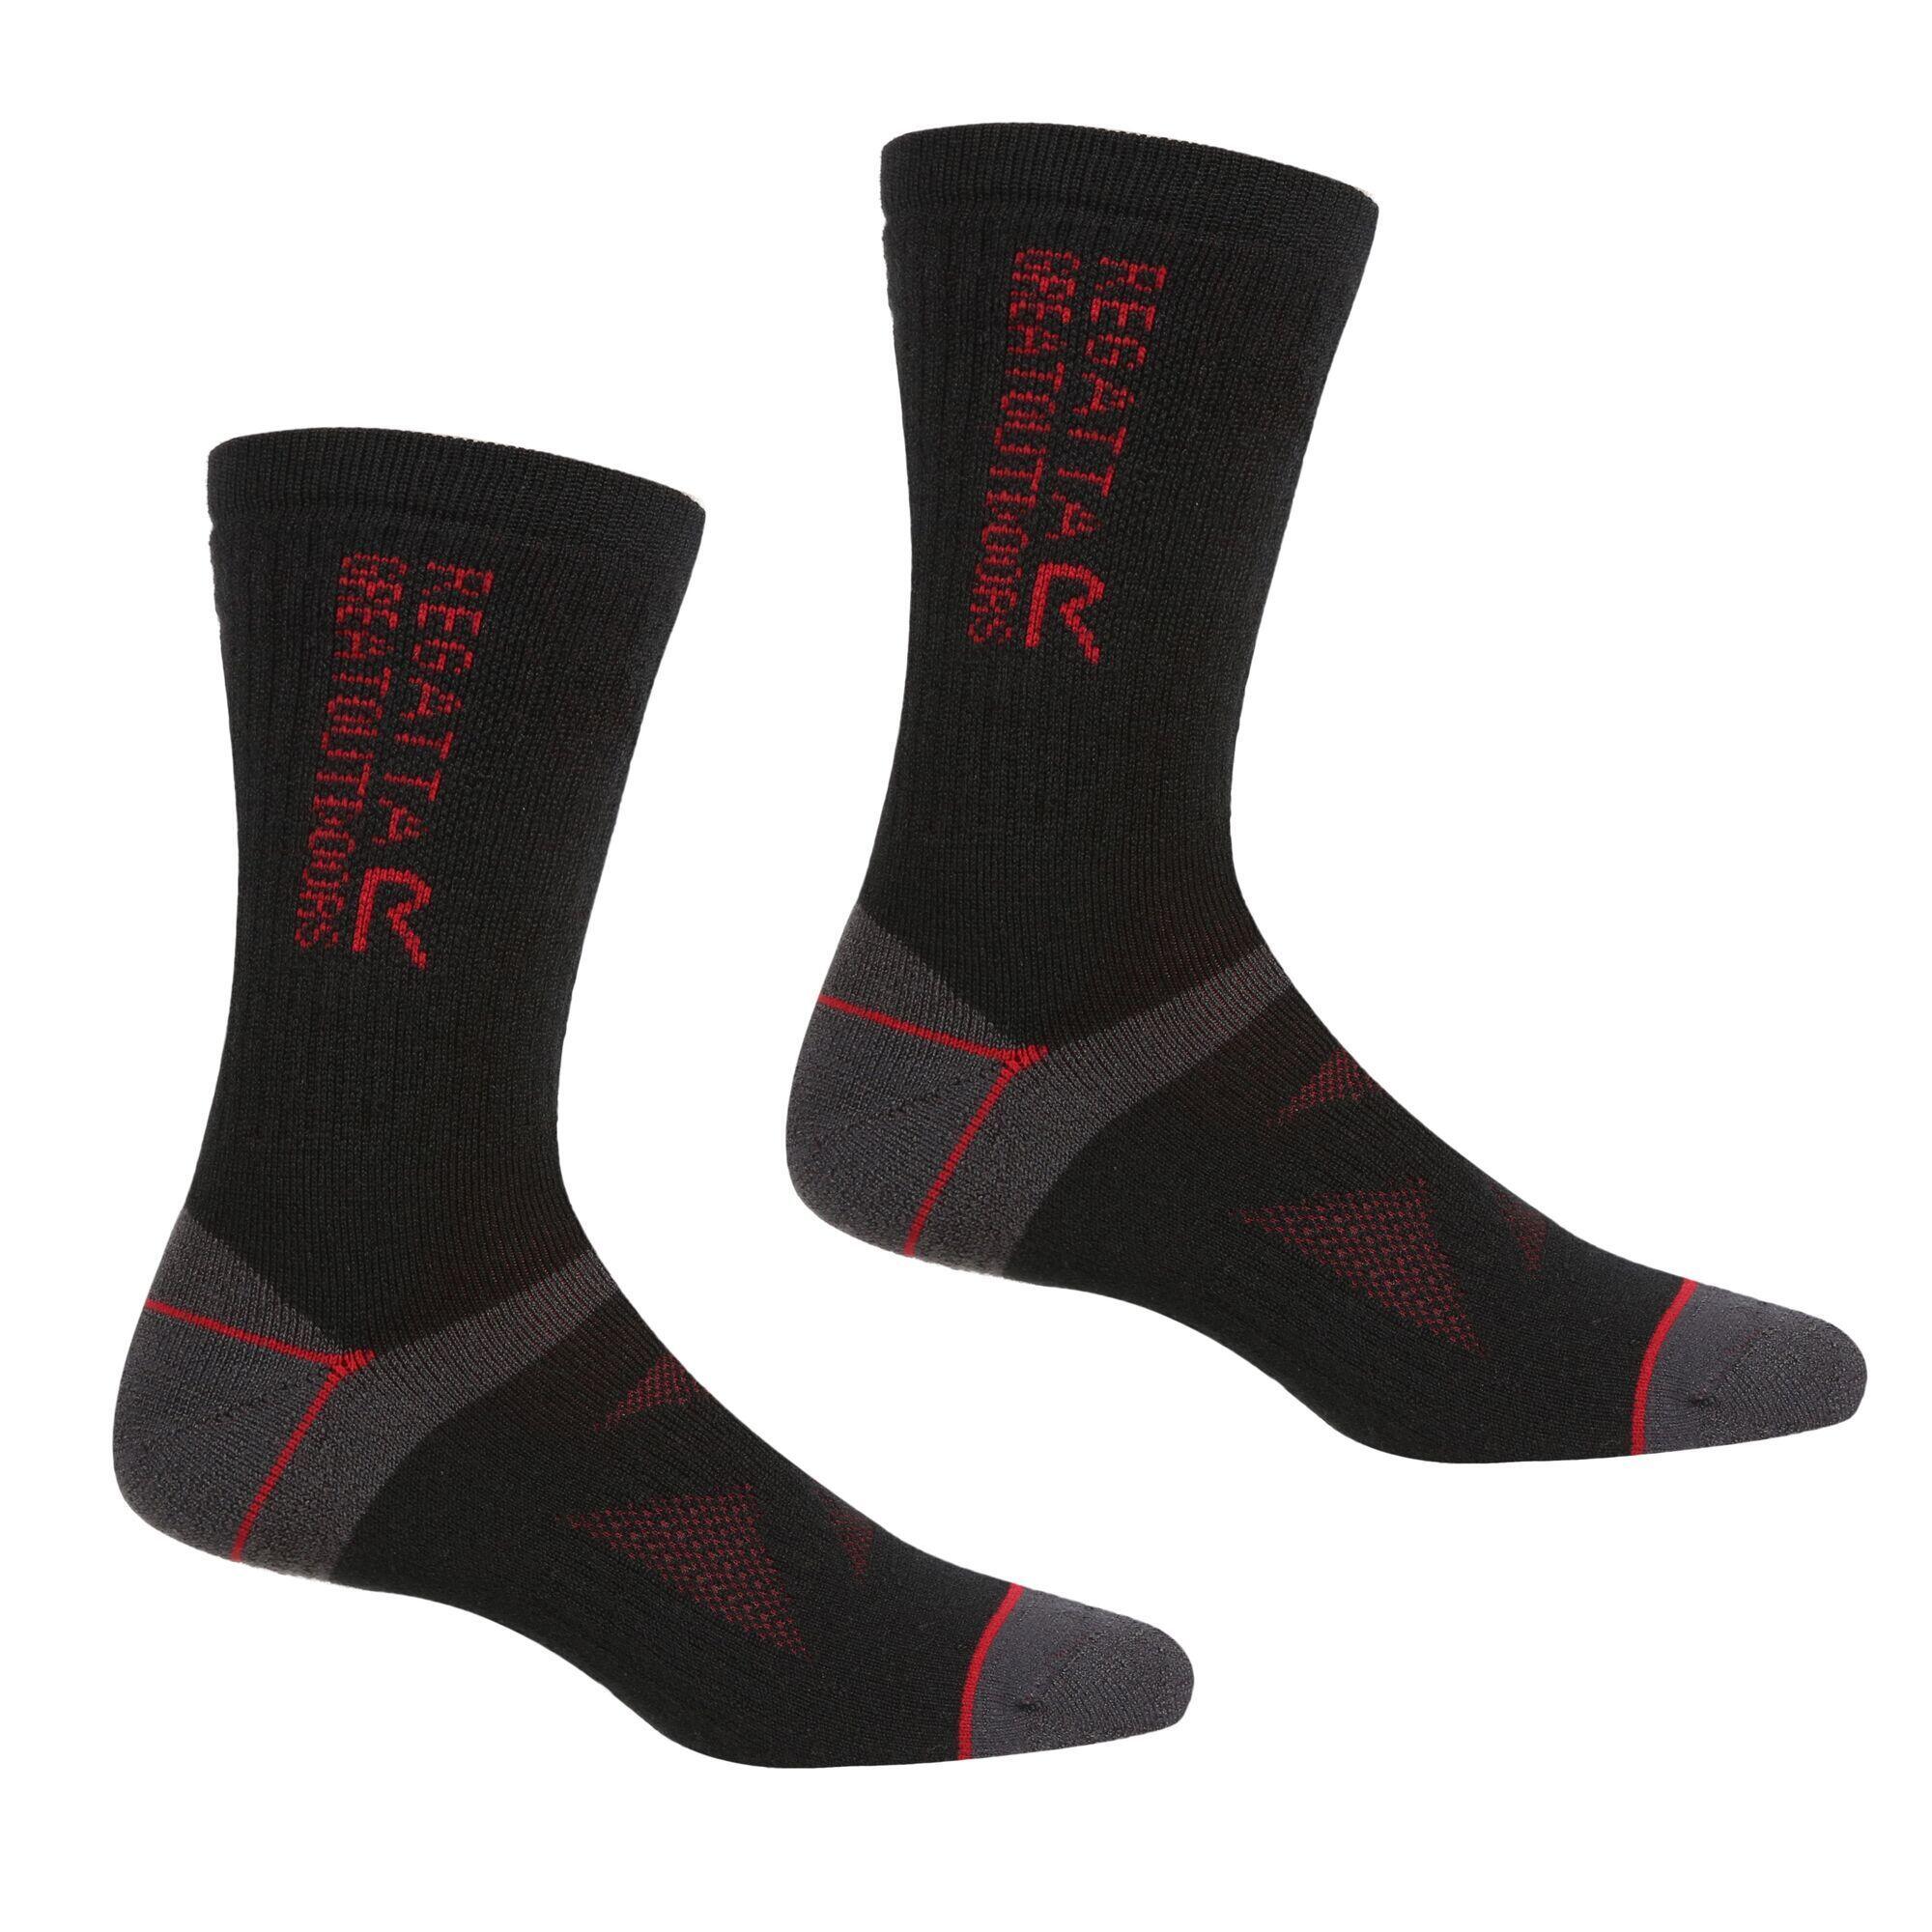 Unisex Adult Wool Hiking Boot Socks (Pack of 2) (Black/Dark Red) 1/4